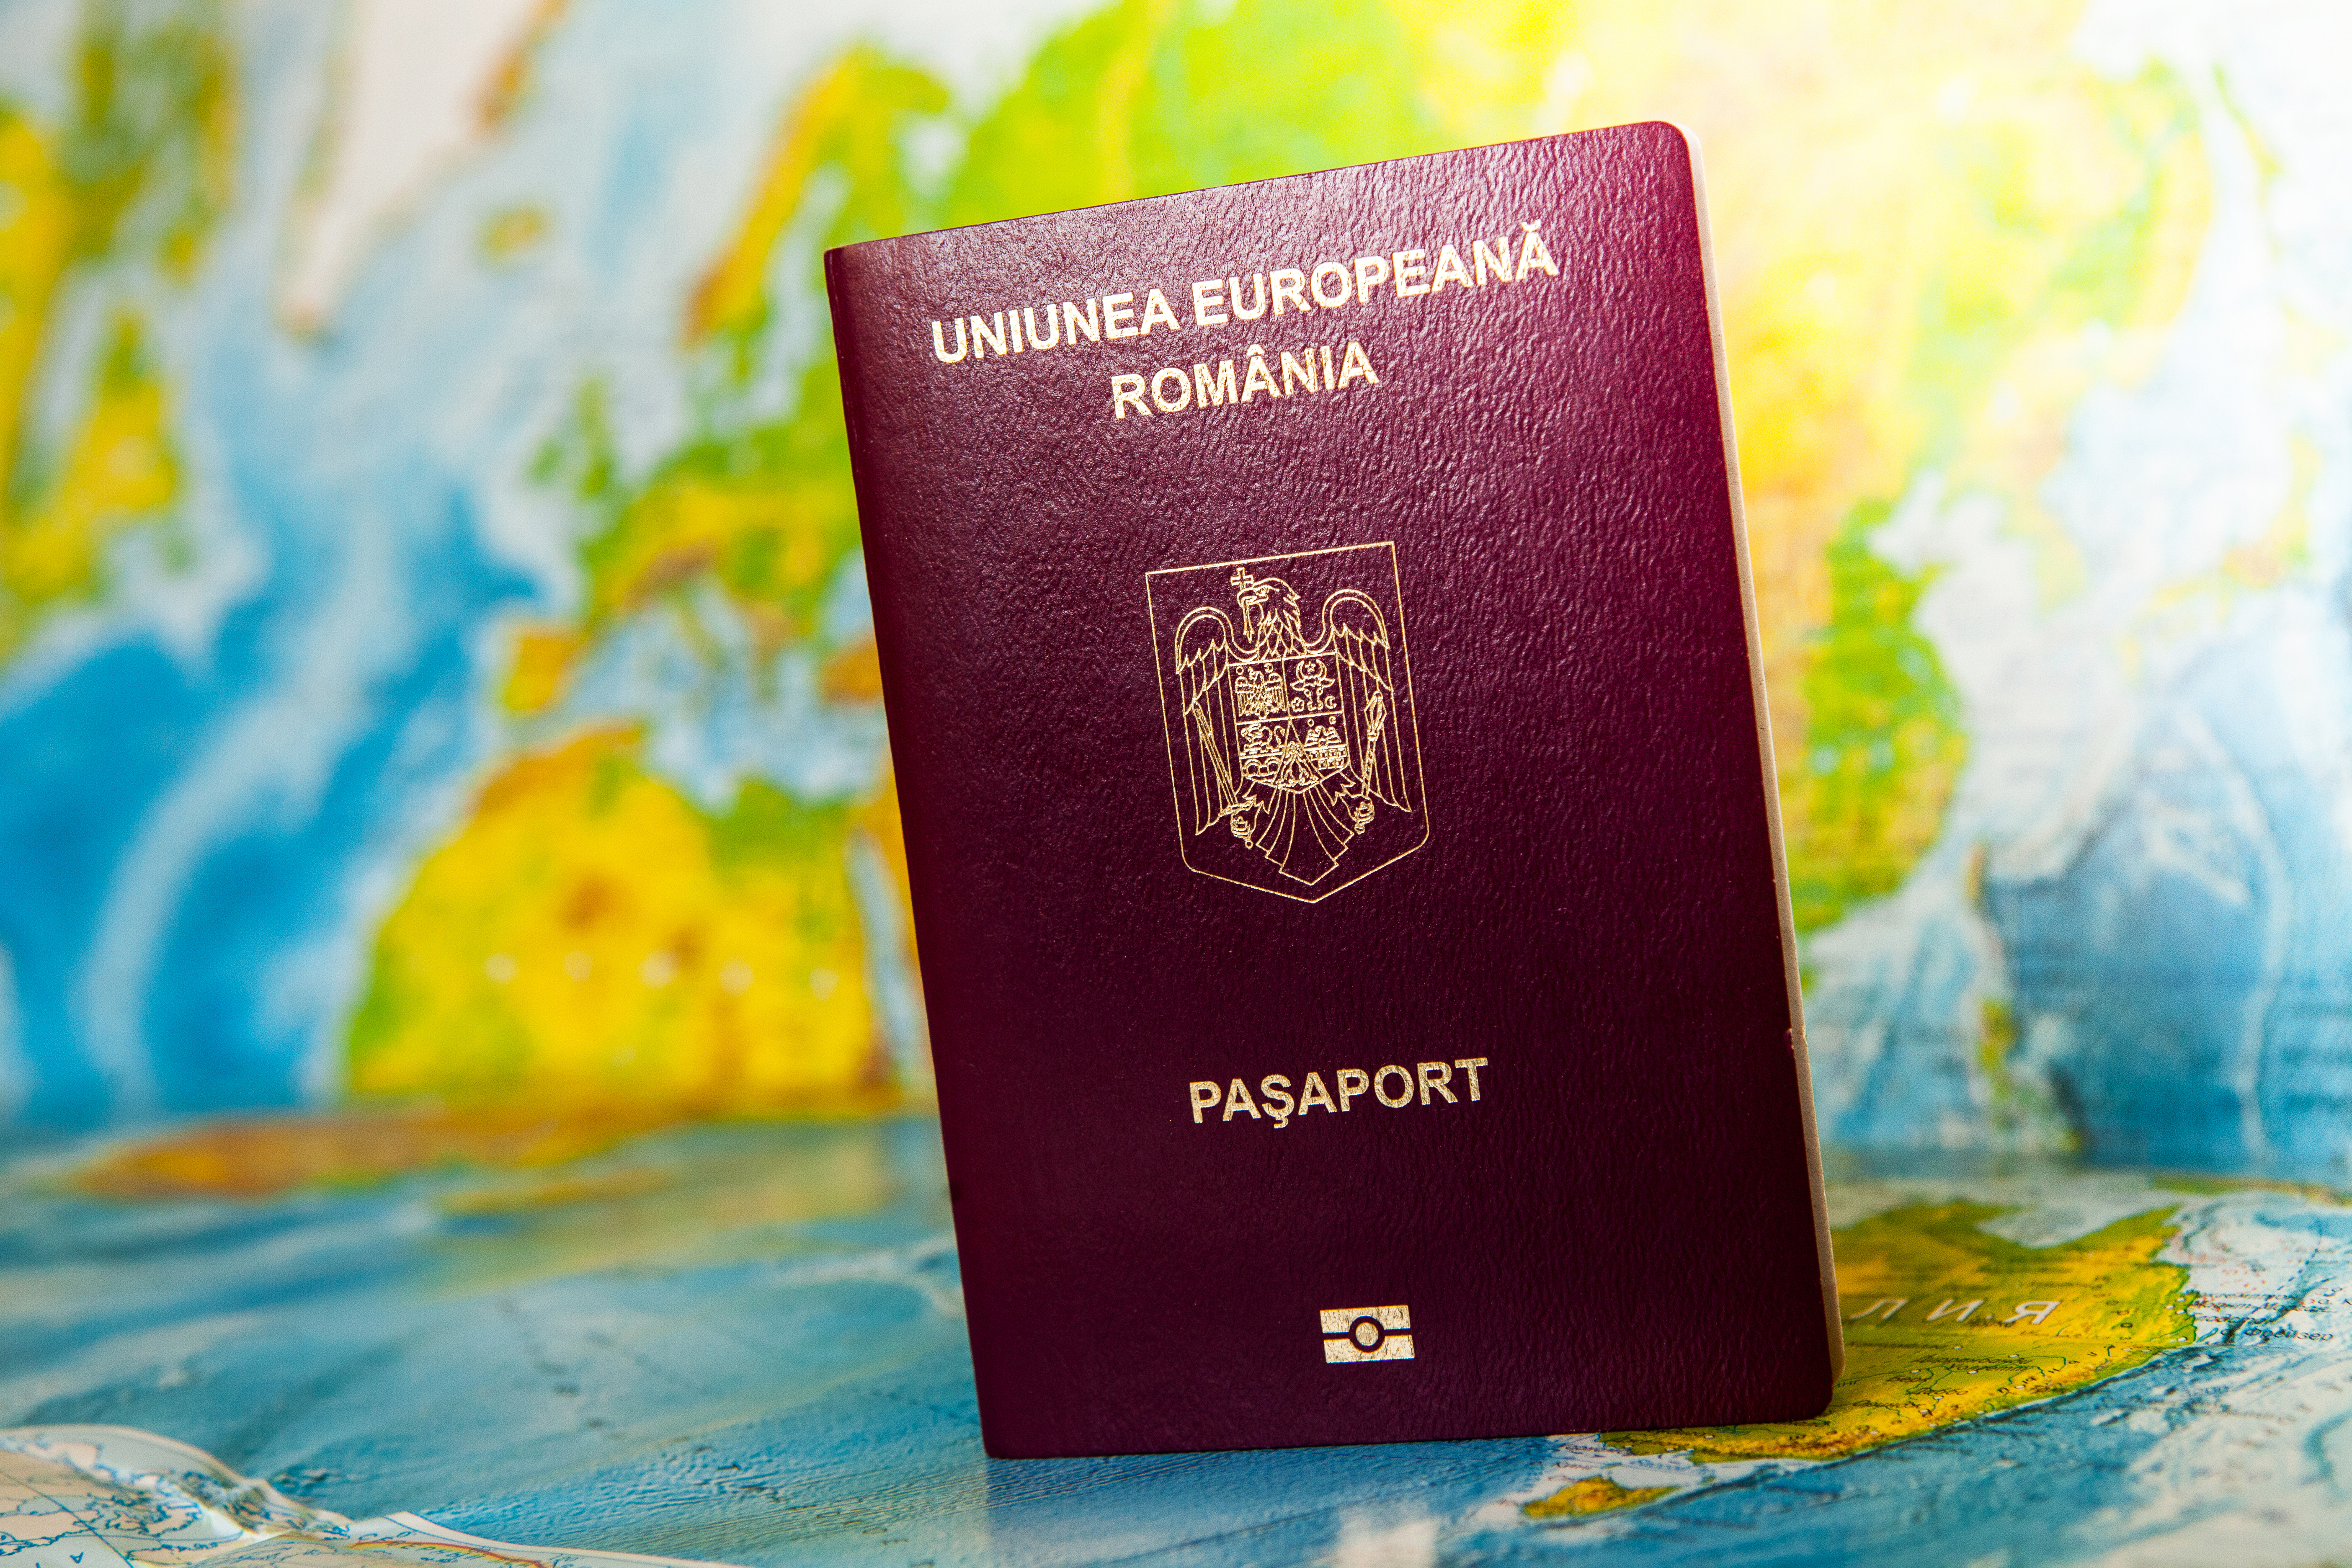 Румынский паспорт, который могут оформить иностранцы